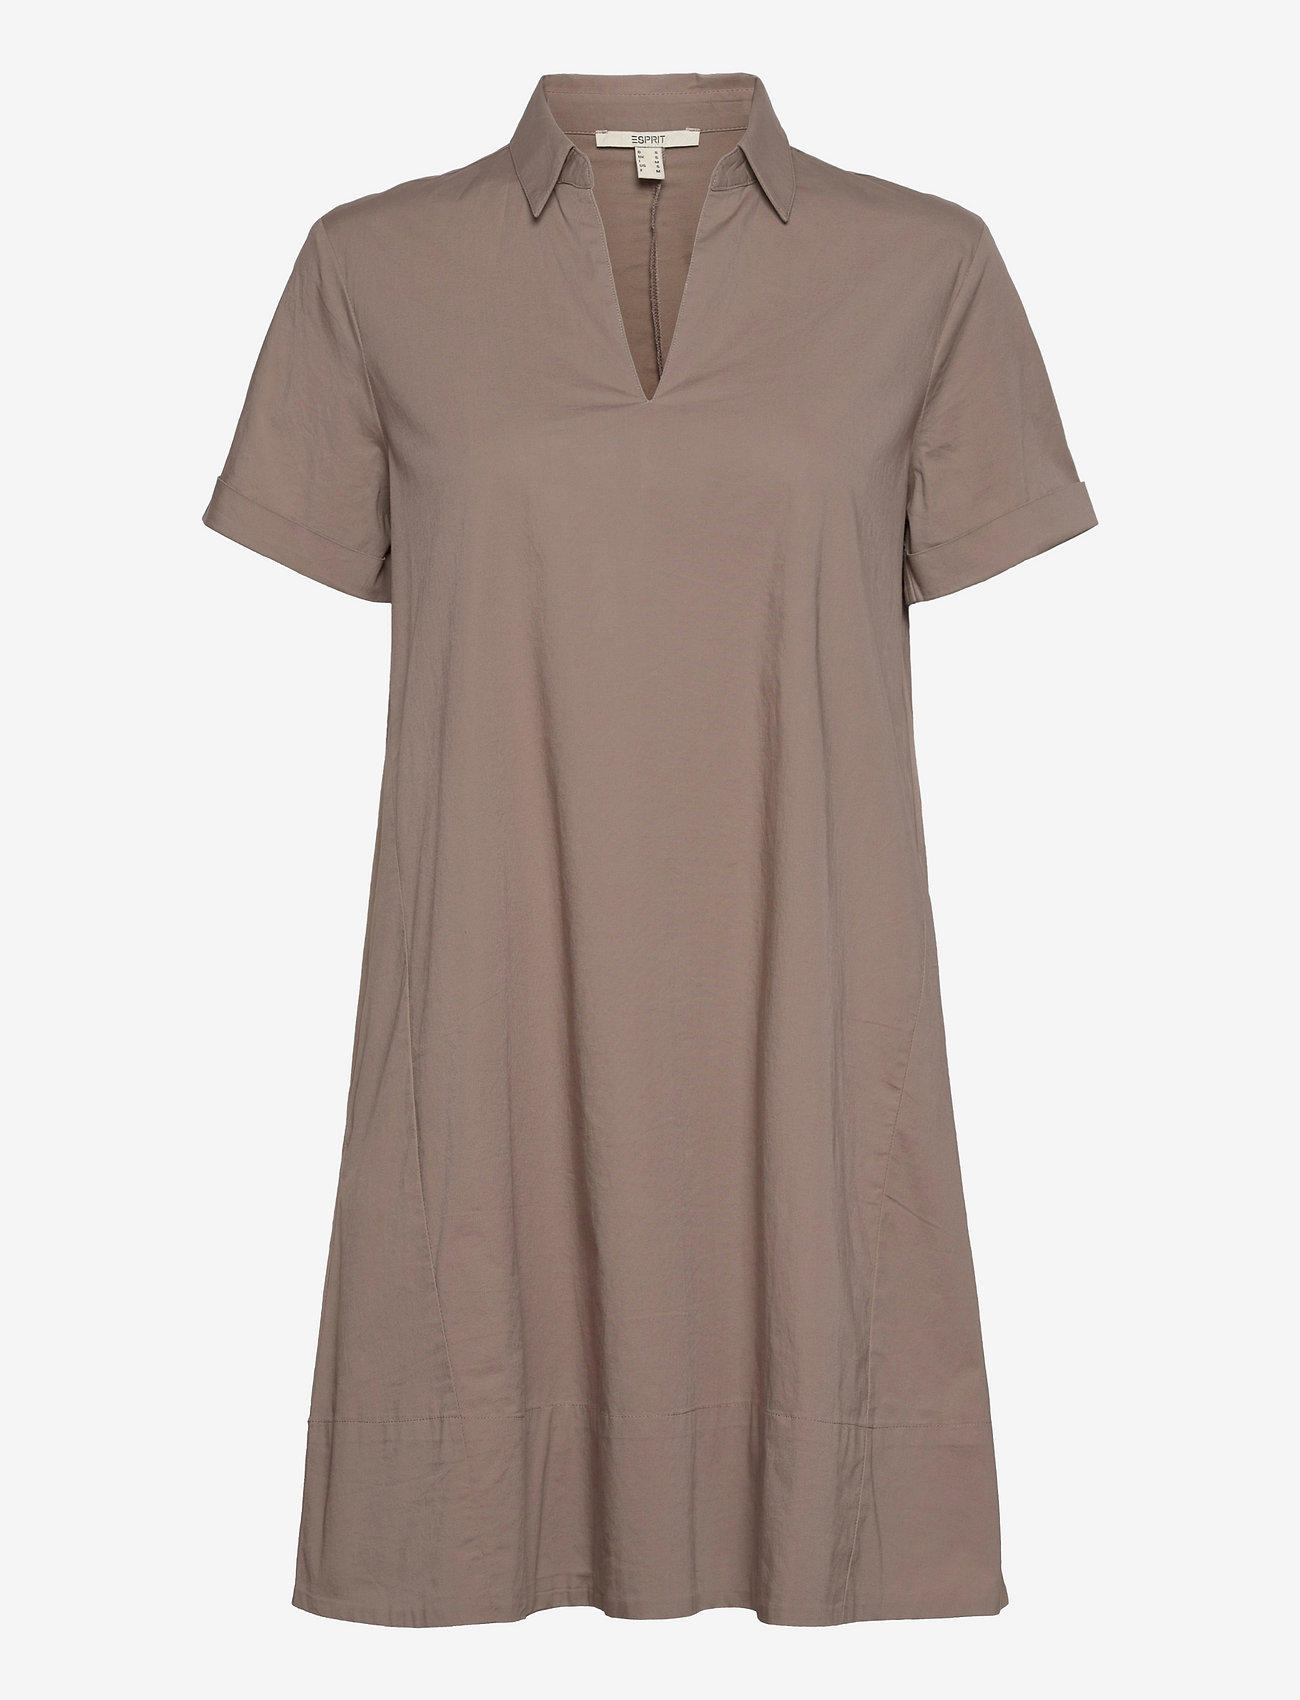 Esprit Casual - Dresses light woven - skjortekjoler - taupe - 0